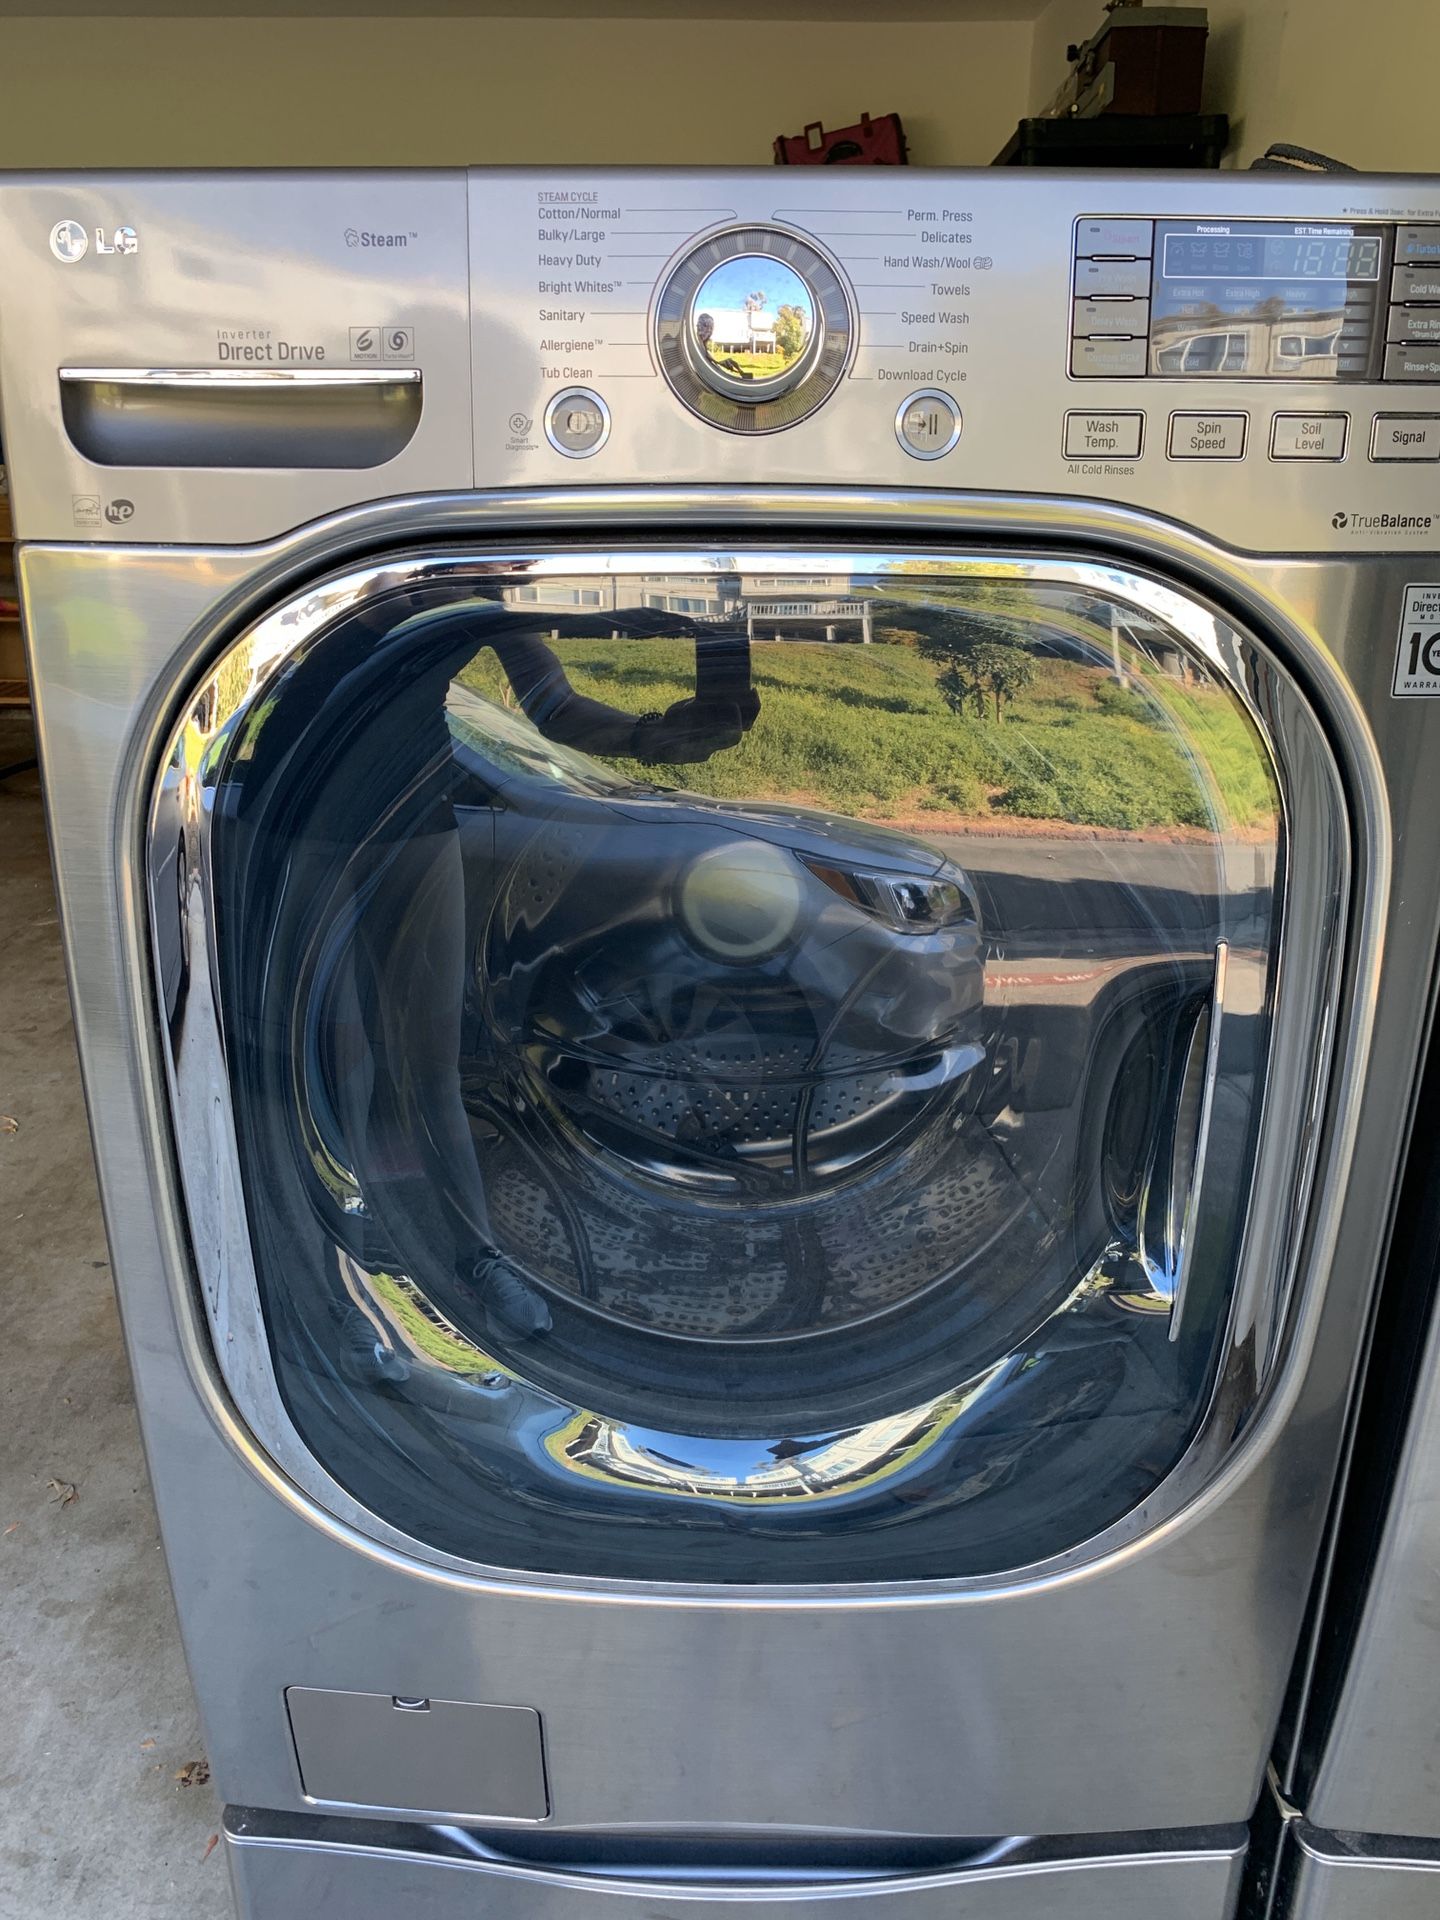 LG Steam Washer and TrueSteam Dryer